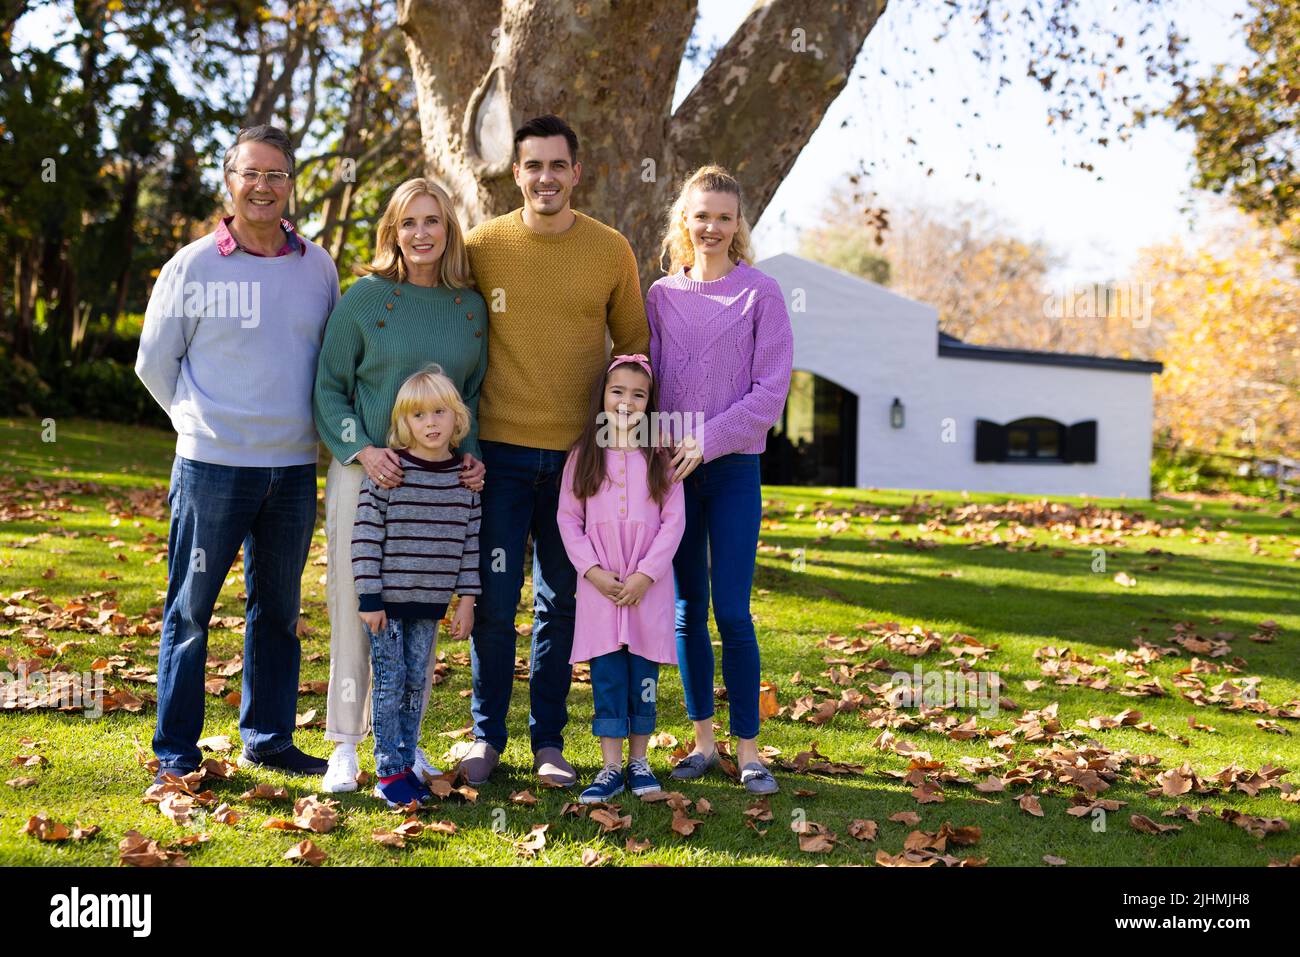 Image d'une famille de caucasiens de plusieurs générations heureuse posant dans un jardin d'automne Banque D'Images